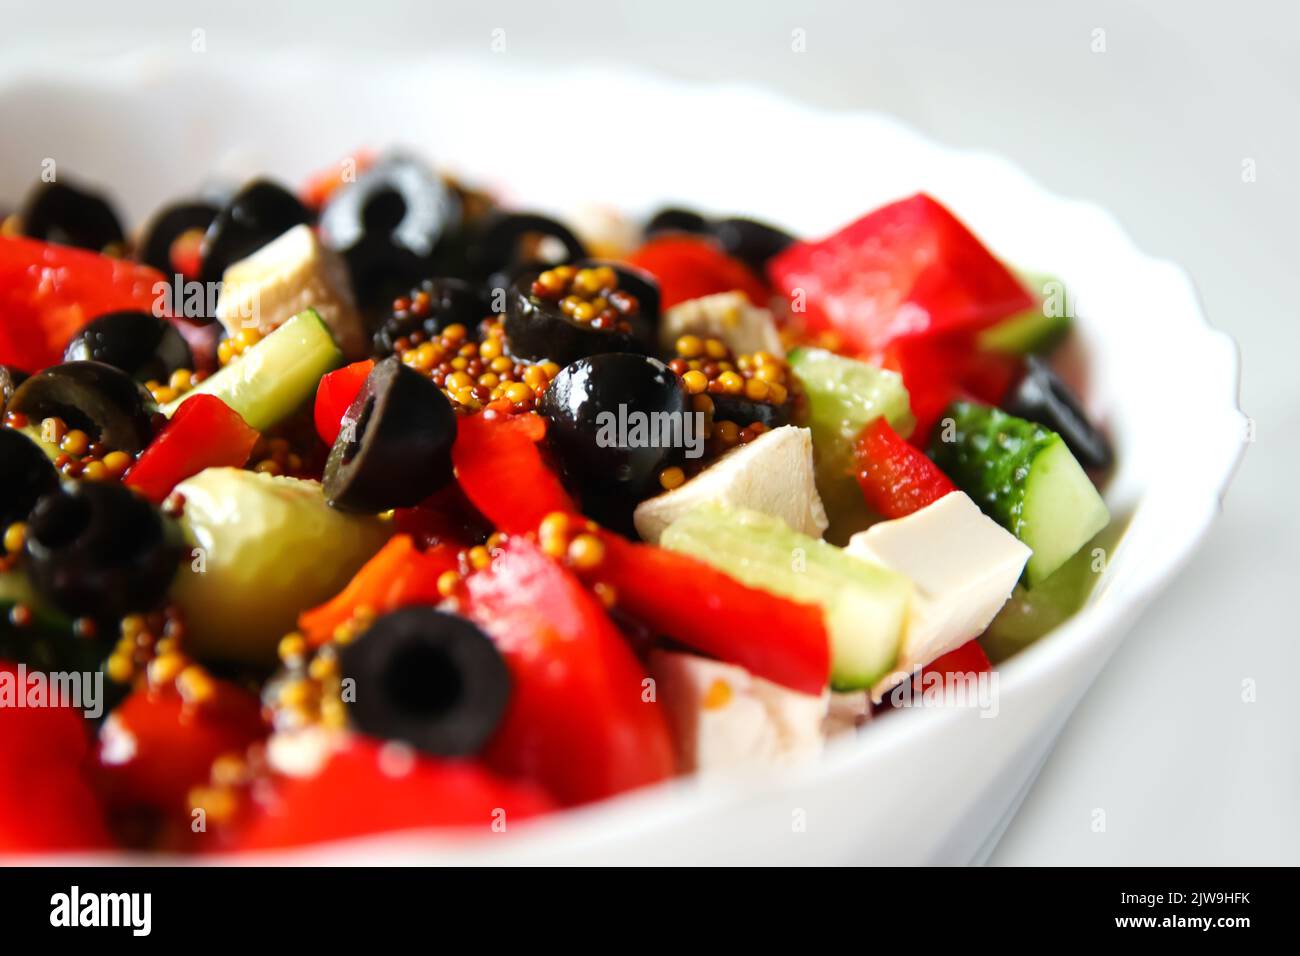 Salade d'été de gros plan. Salade grecque classique de tomates, concombres, poivron rouge, oignon aux olives, origan et feta. Légumes frais mélangés Banque D'Images